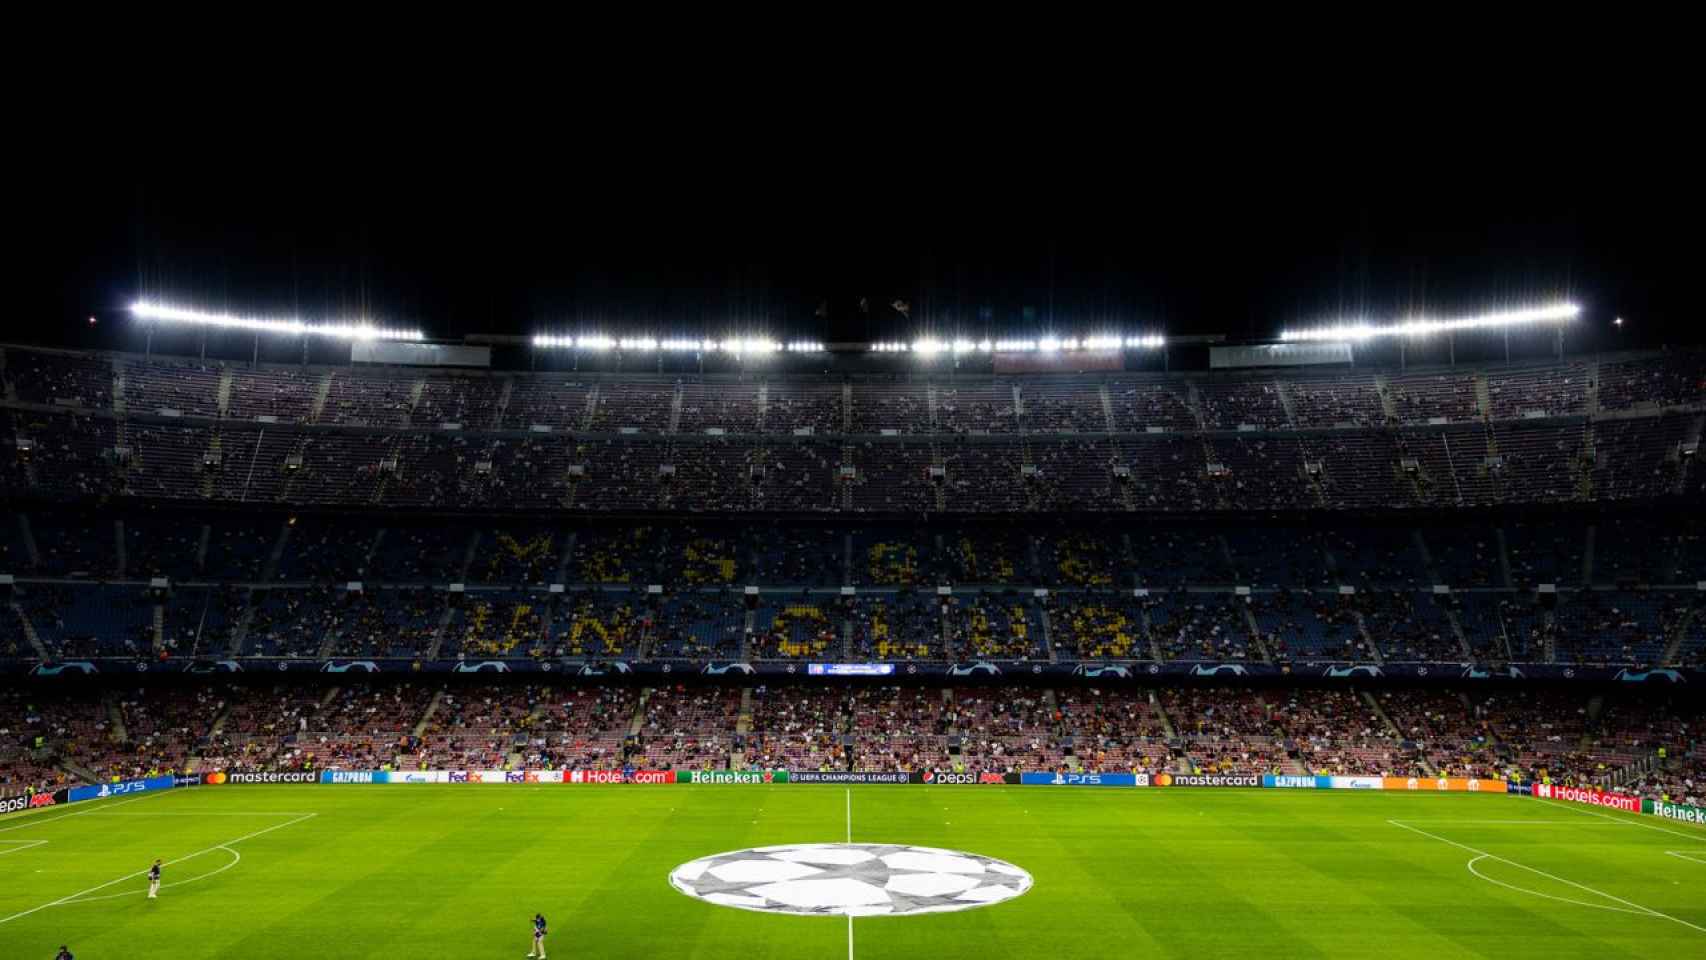 El Camp Nou medirá la felicidad del aficionado culé / FC Barcelona